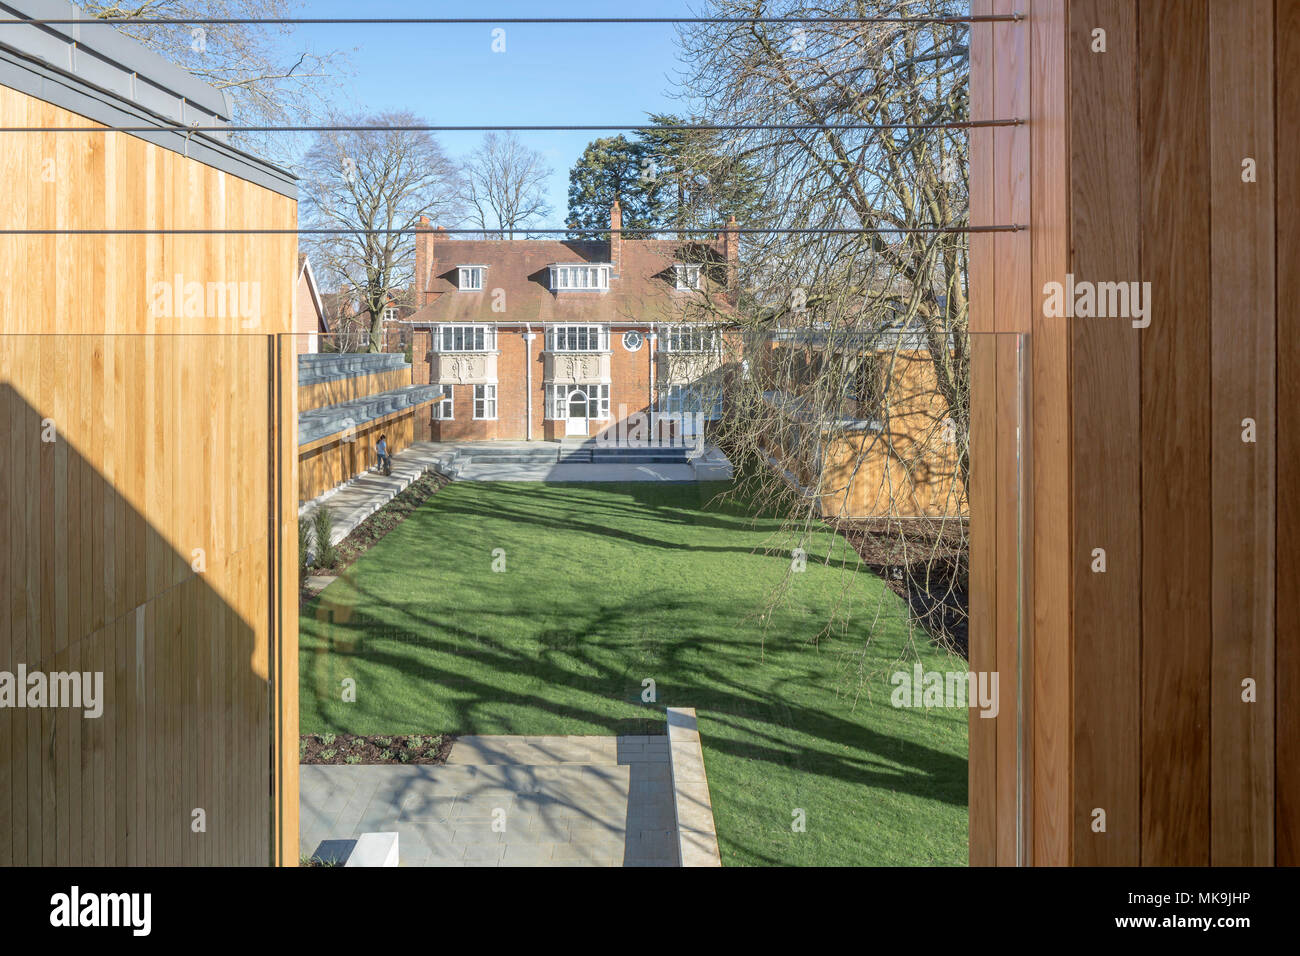 Vista in elevazione da studenti' alloggio verso il giardino. Santa Chiara's College di Oxford, Regno Unito. Architetto: Hodder e partner, 2016. Foto Stock